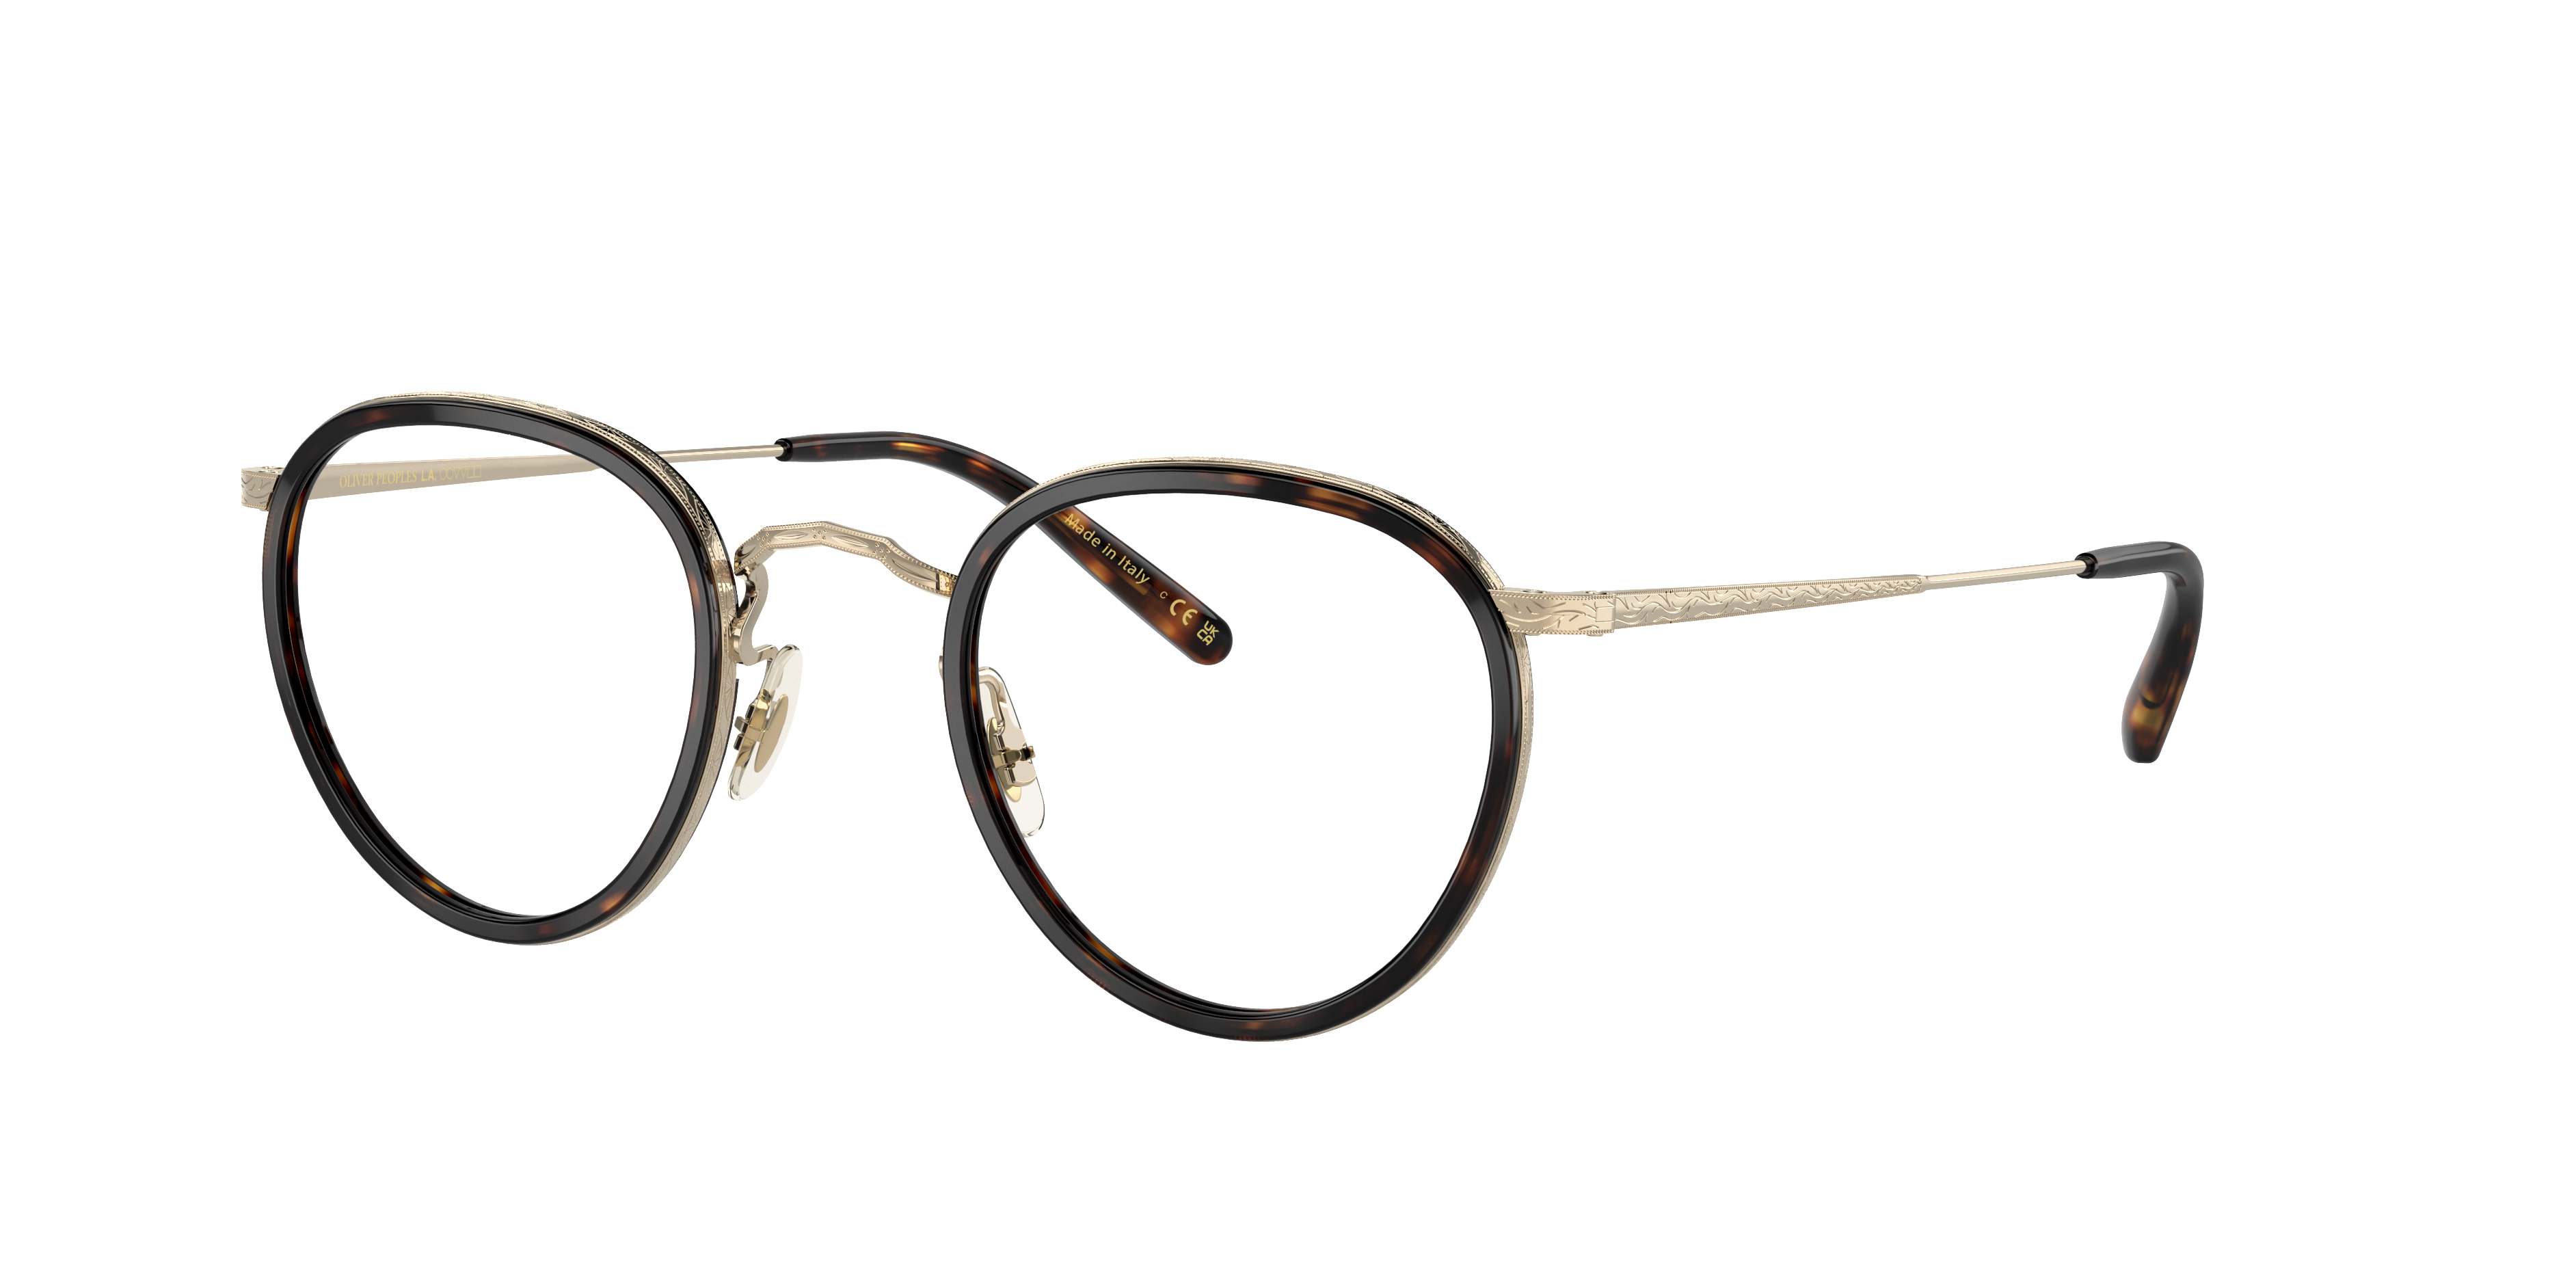 Eyeglasses OV1104 - 362/Gold - Clear - Acetate/Metal | Oliver 